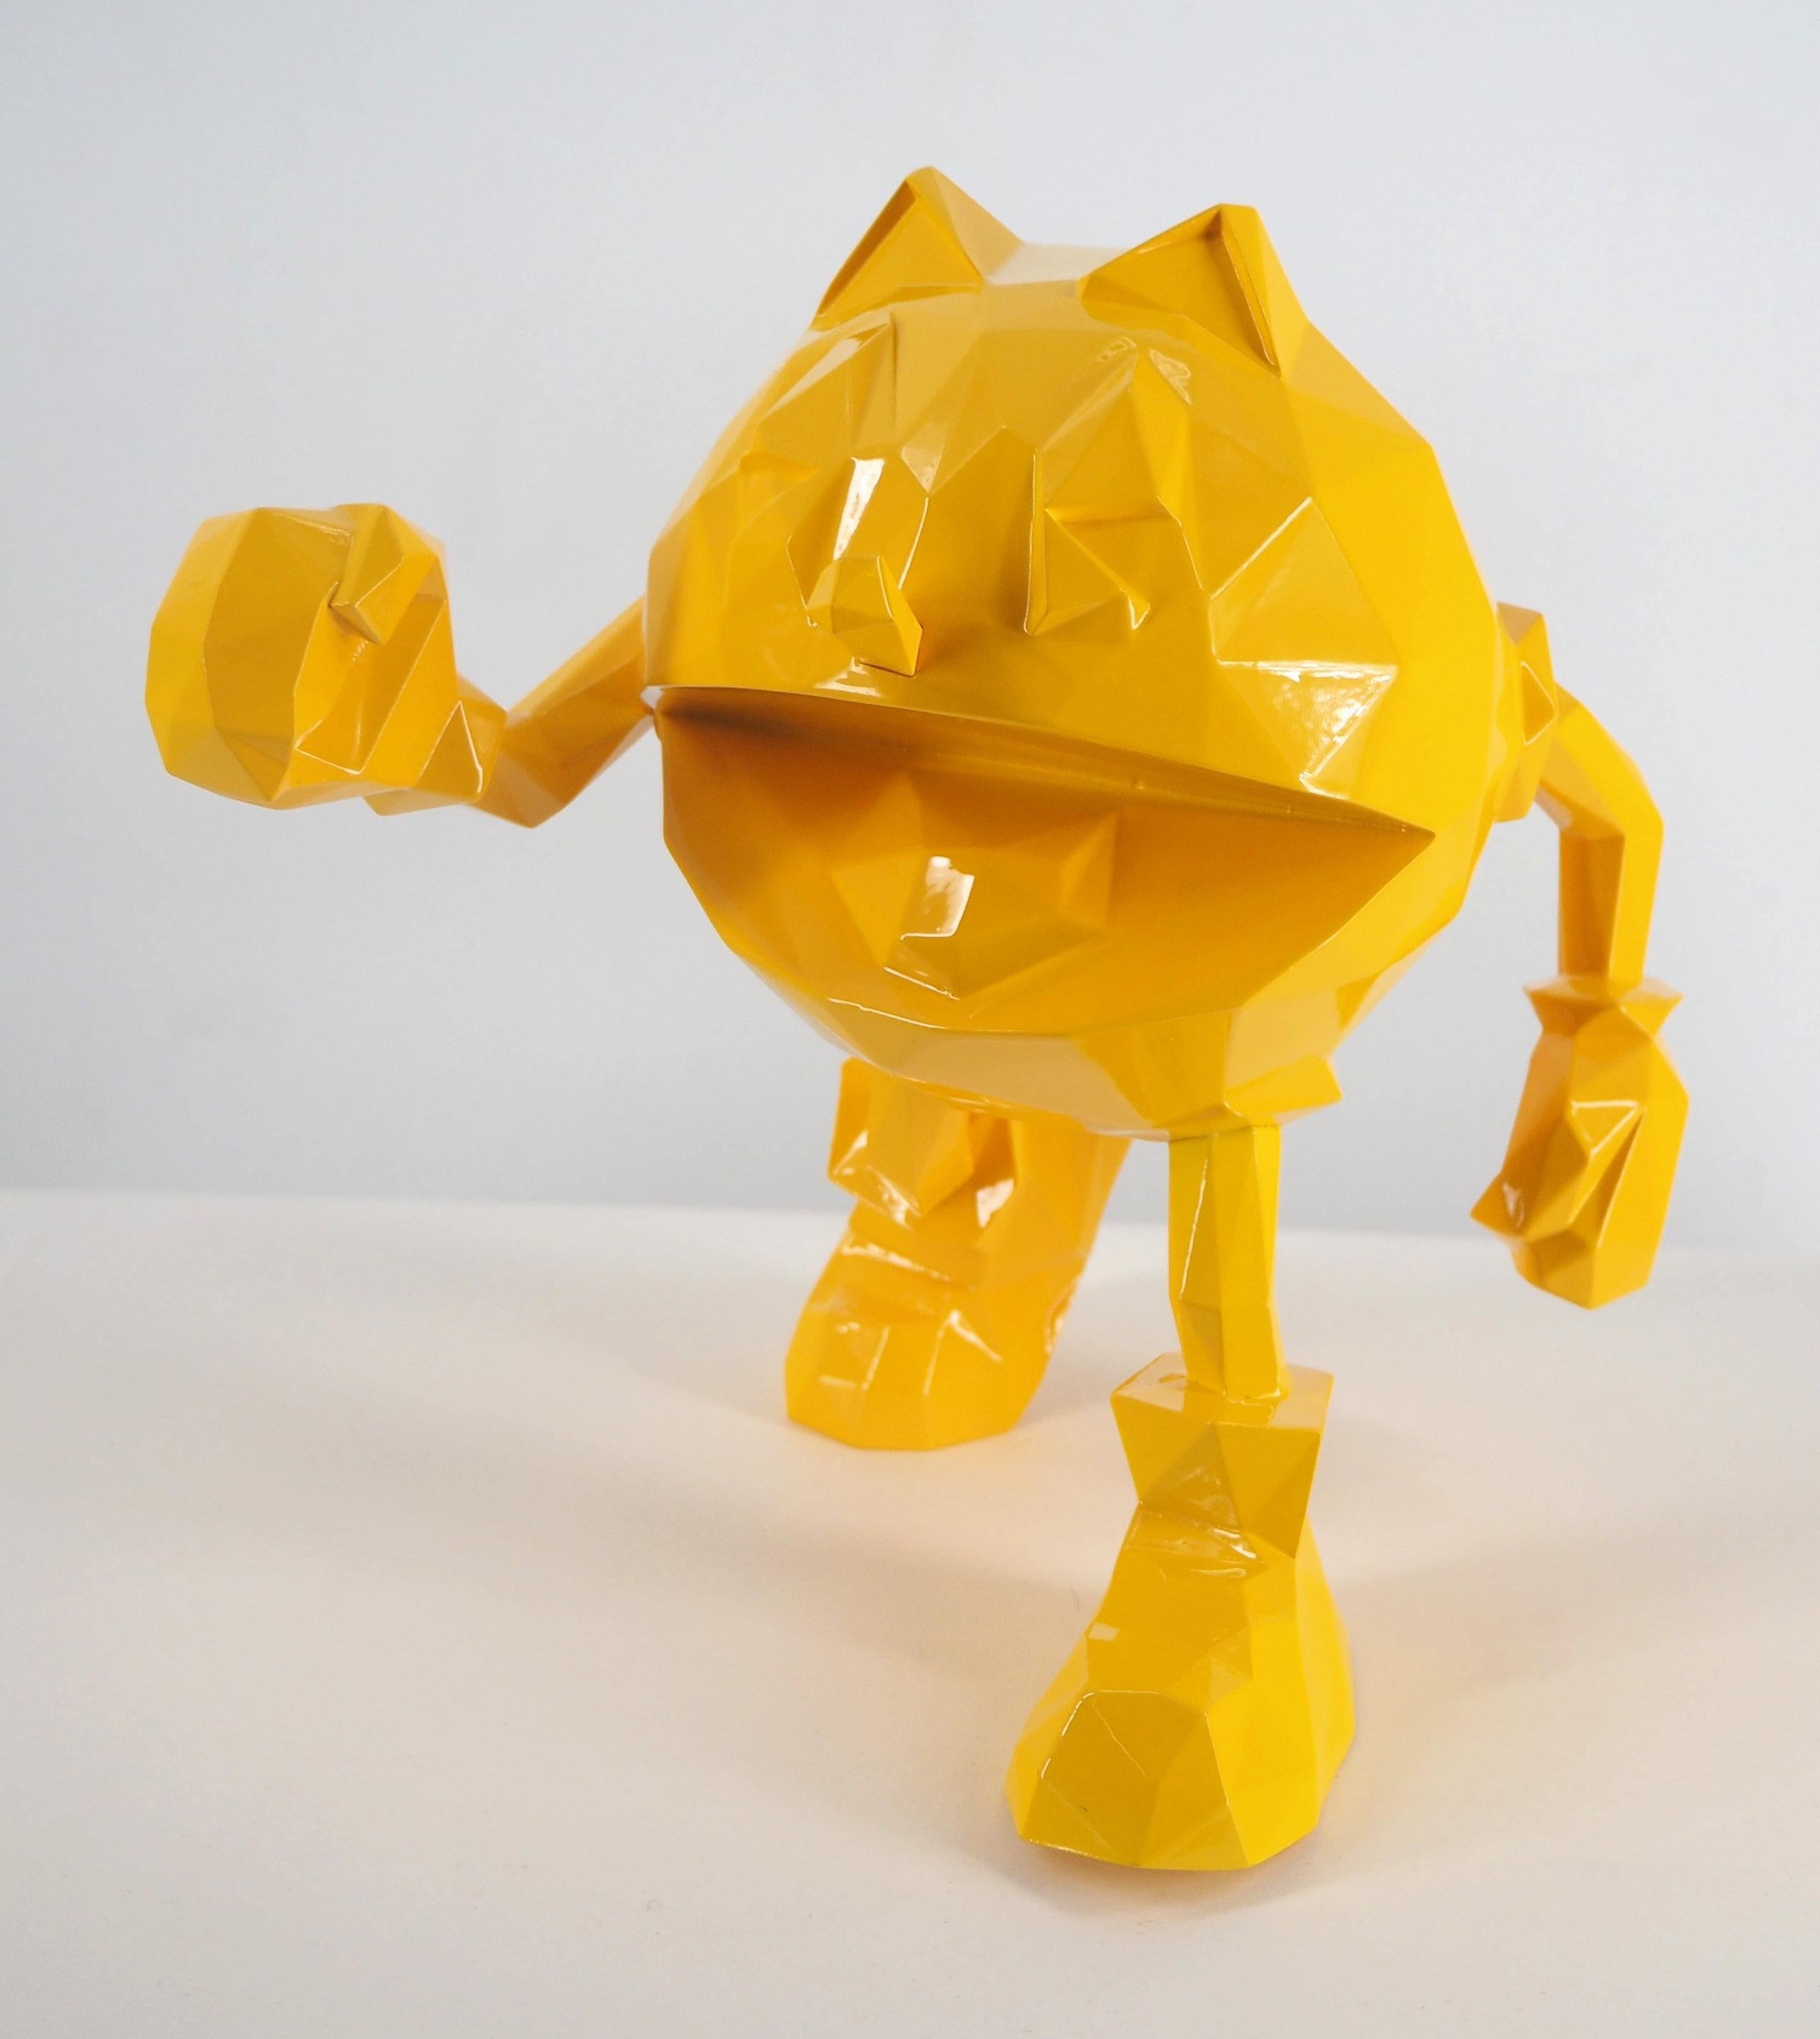 Richard ORLINSKI
Pac Man (édition jaune)

Sculpture en résine
Jaune Métallique
Environ 18 cm (c. 7 in)
Présenté dans sa boîte d'origine

Excellent état